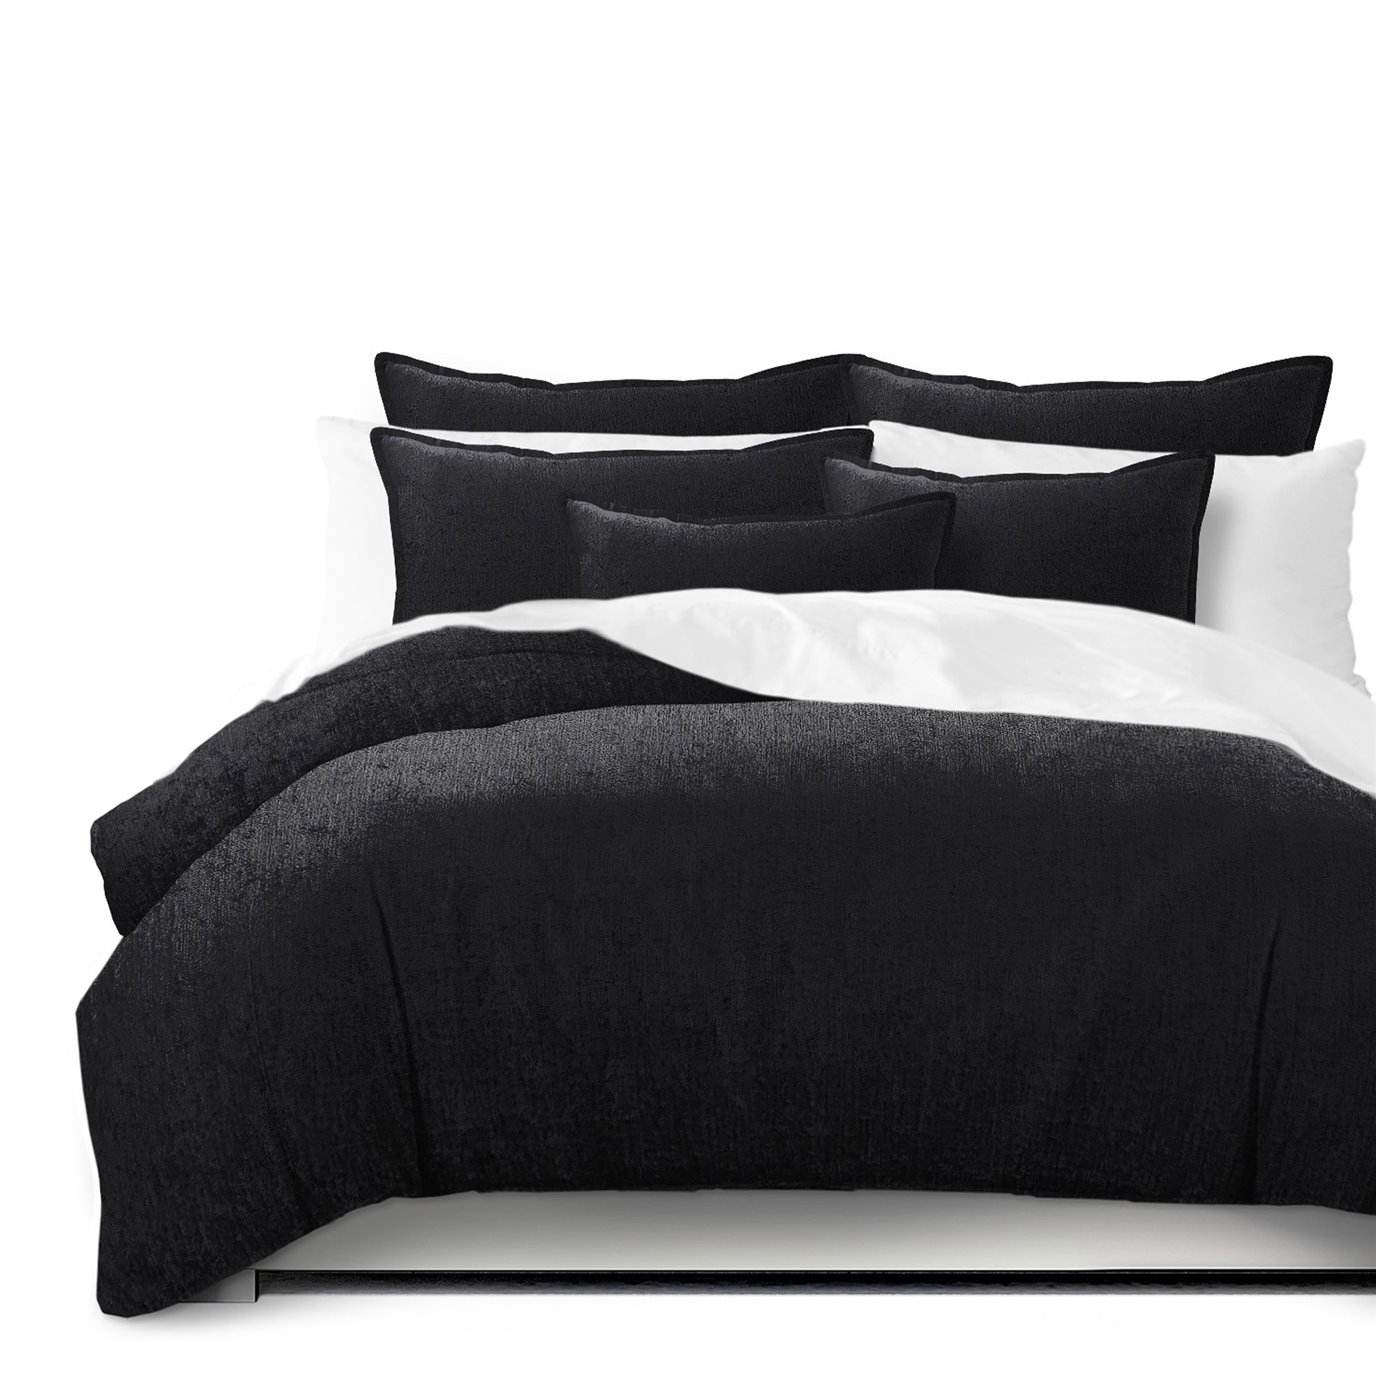 Juno Velvet Black Comforter and Pillow Sham(s) Set - Size King / California King